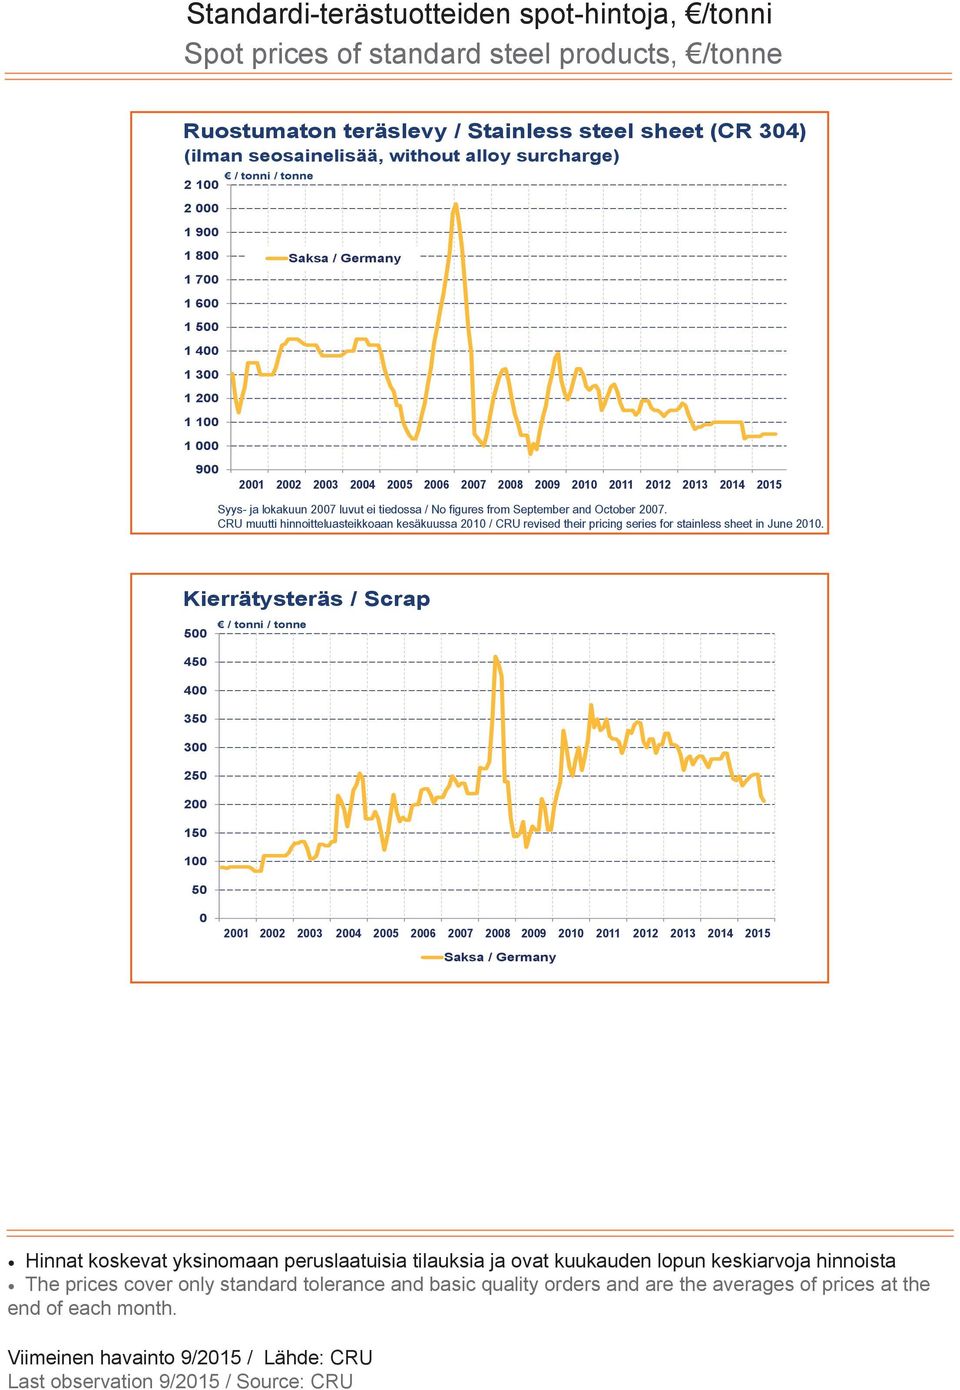 CRU muutti hinnoitteluasteikkoaan kesäkuussa 2010 / CRU revised their pricing series for stainless sheet in June 2010.